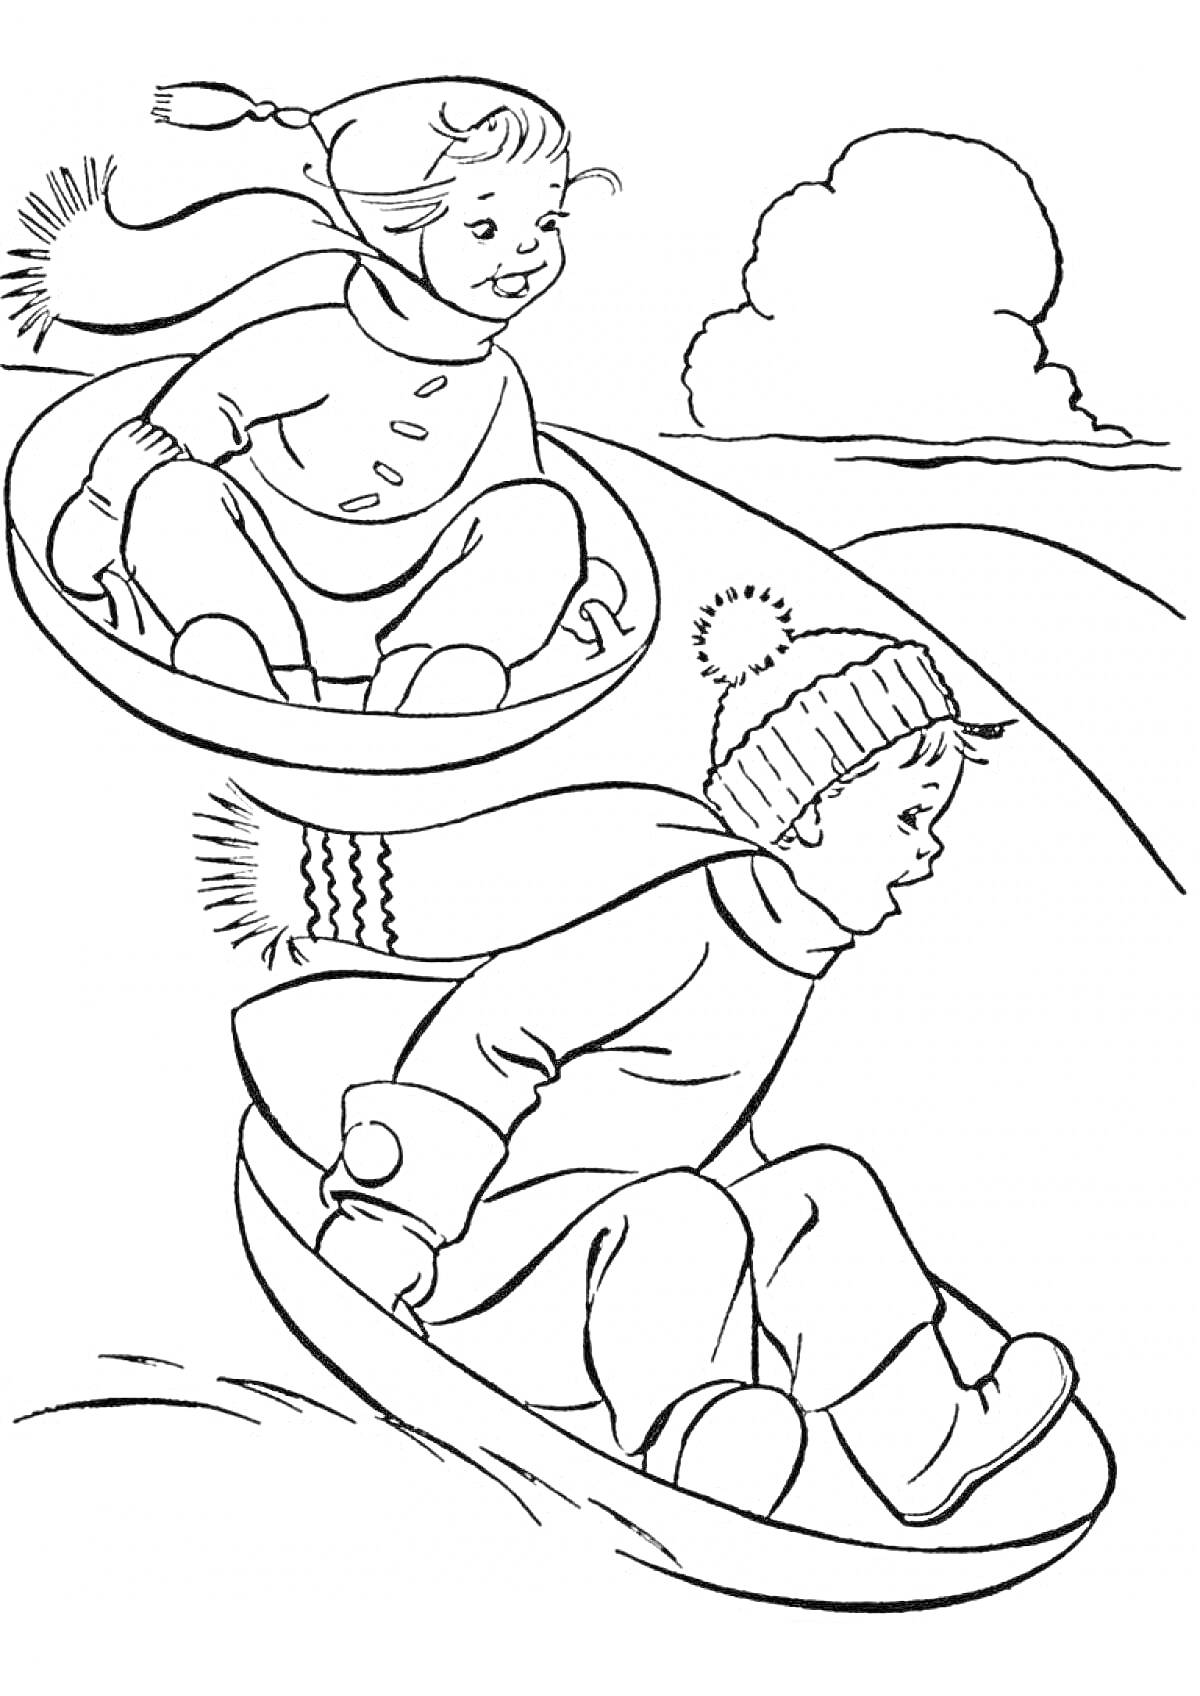 Раскраска Дети катаются на горке зимой на санках